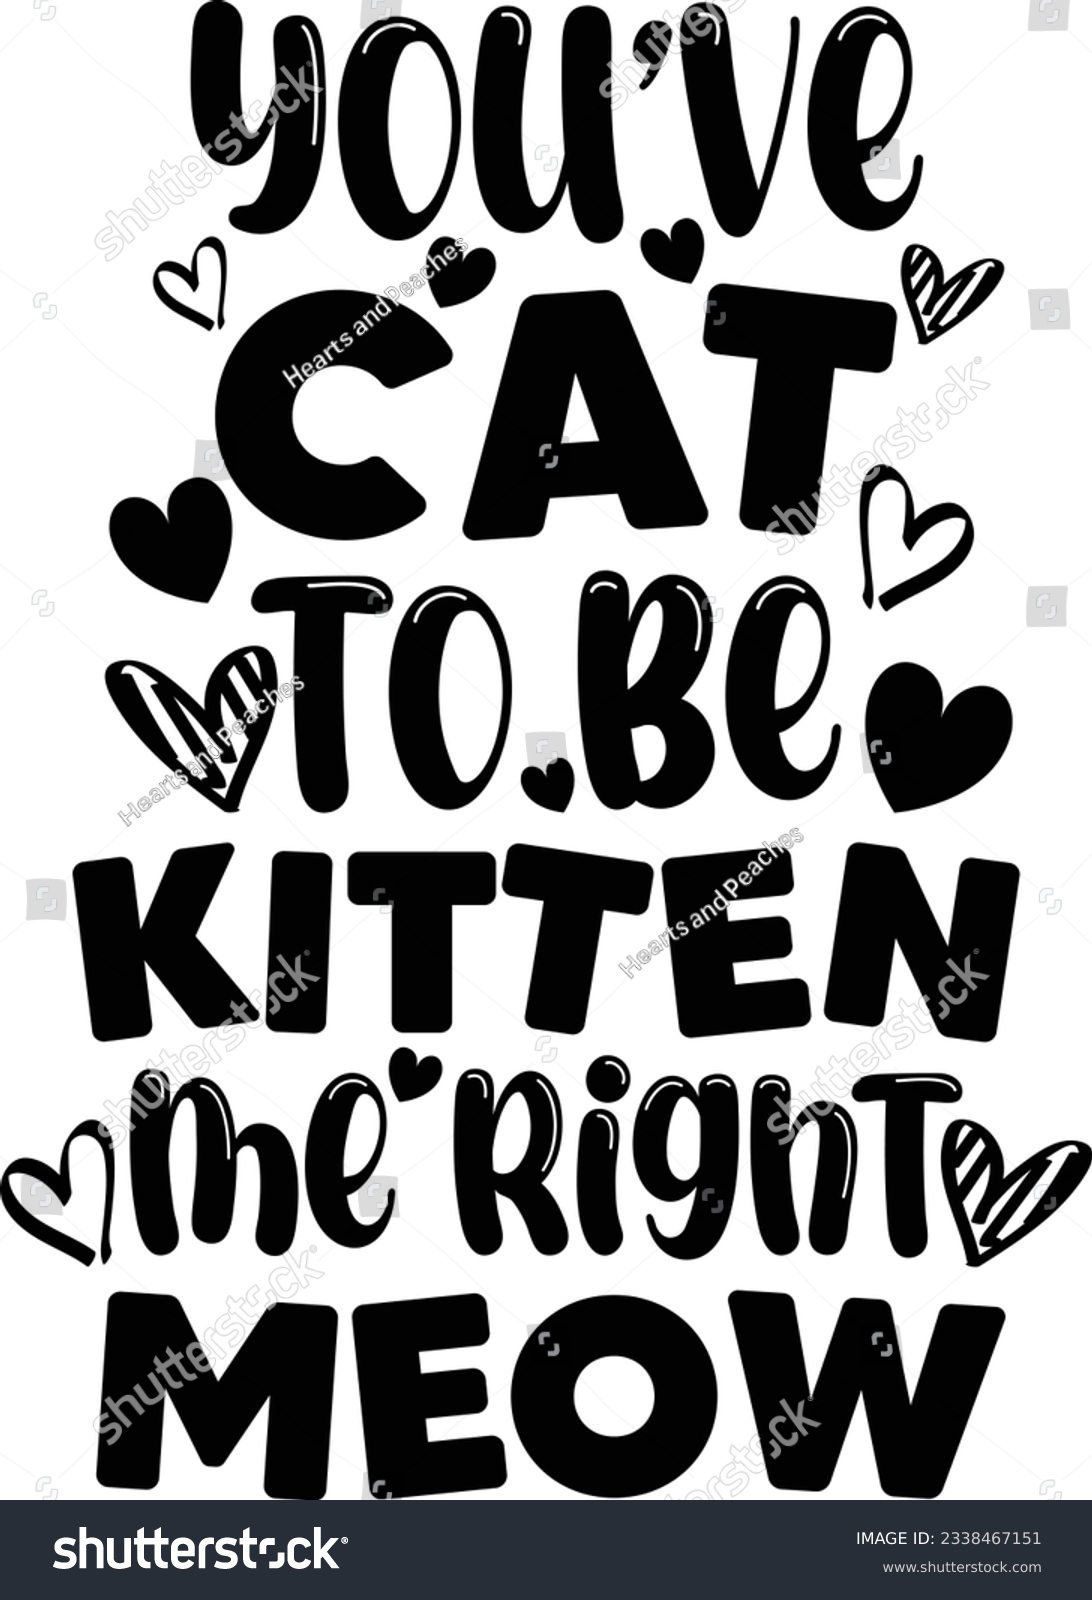 SVG of You’ve cat to be kitten me right meow, Cat SVG Design, SVG File, SVG Cut File, T-shirt design, Tshirt design svg